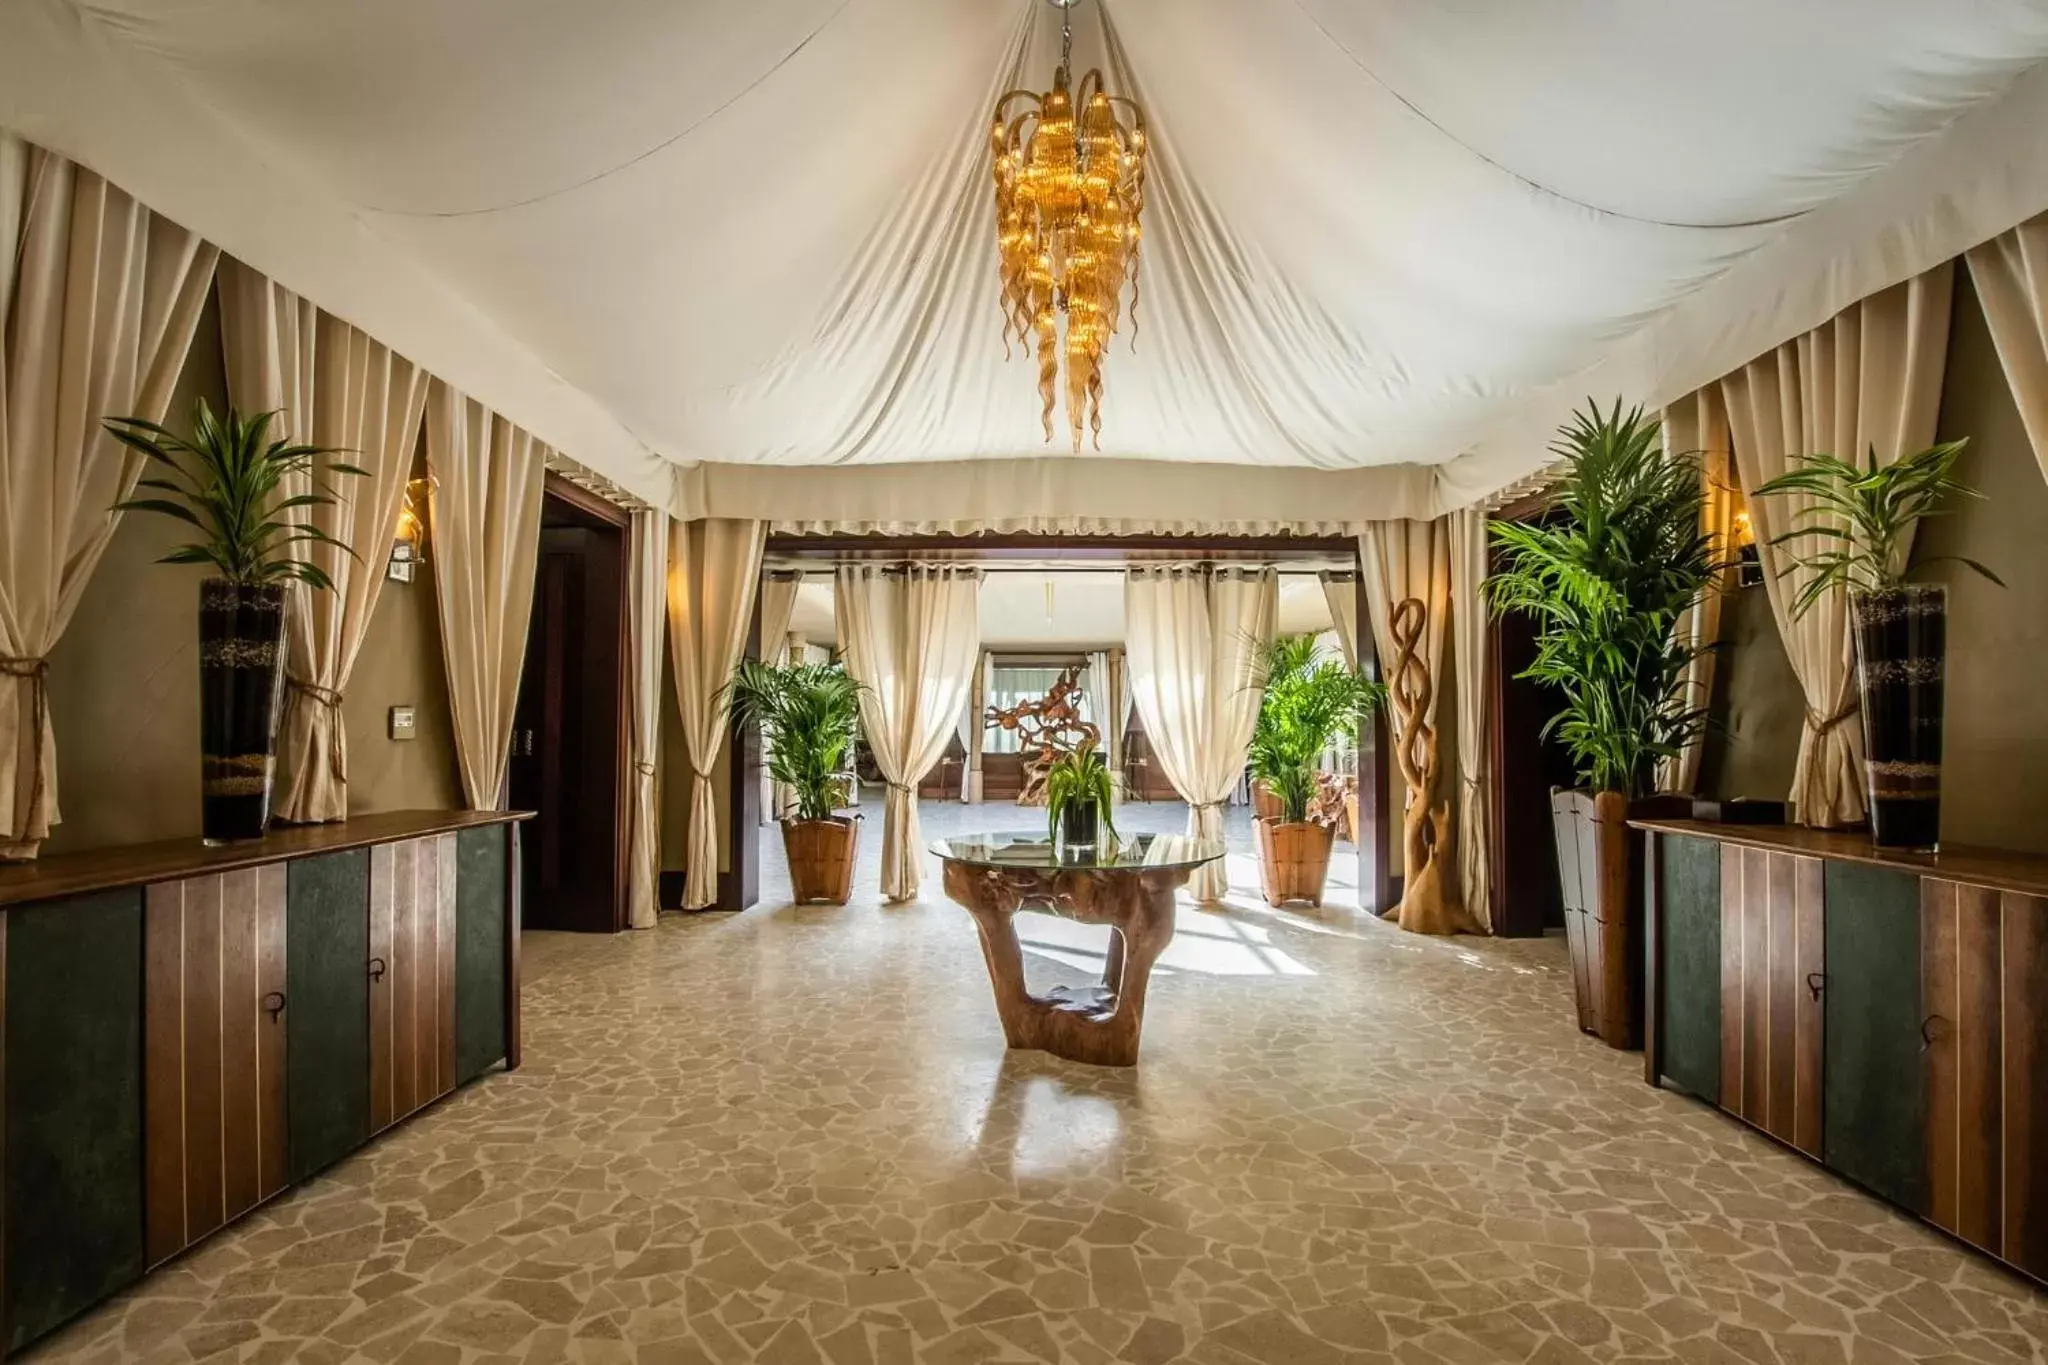 Lobby or reception, Lobby/Reception in Telal Resort Al Ain